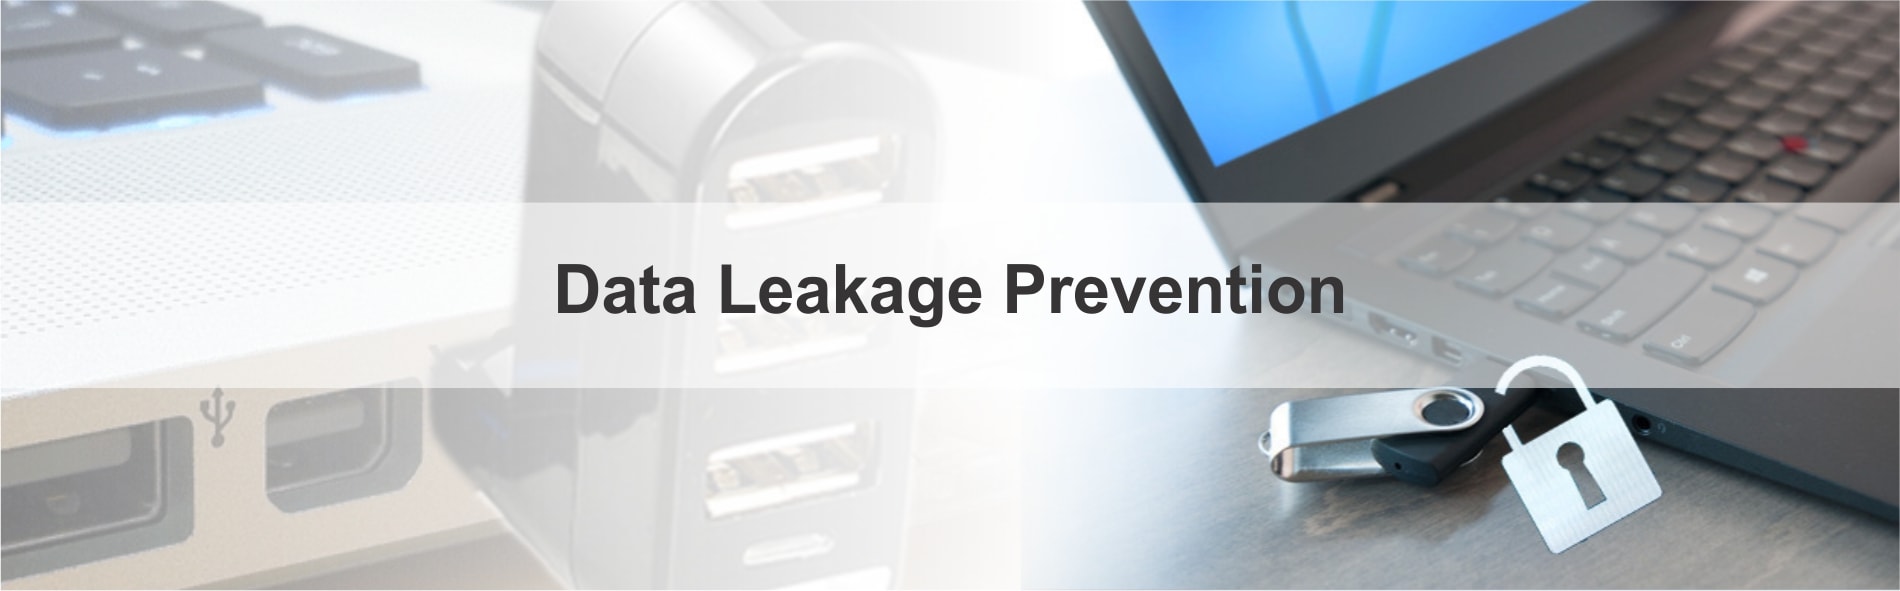 Data Leakage Prevention-min